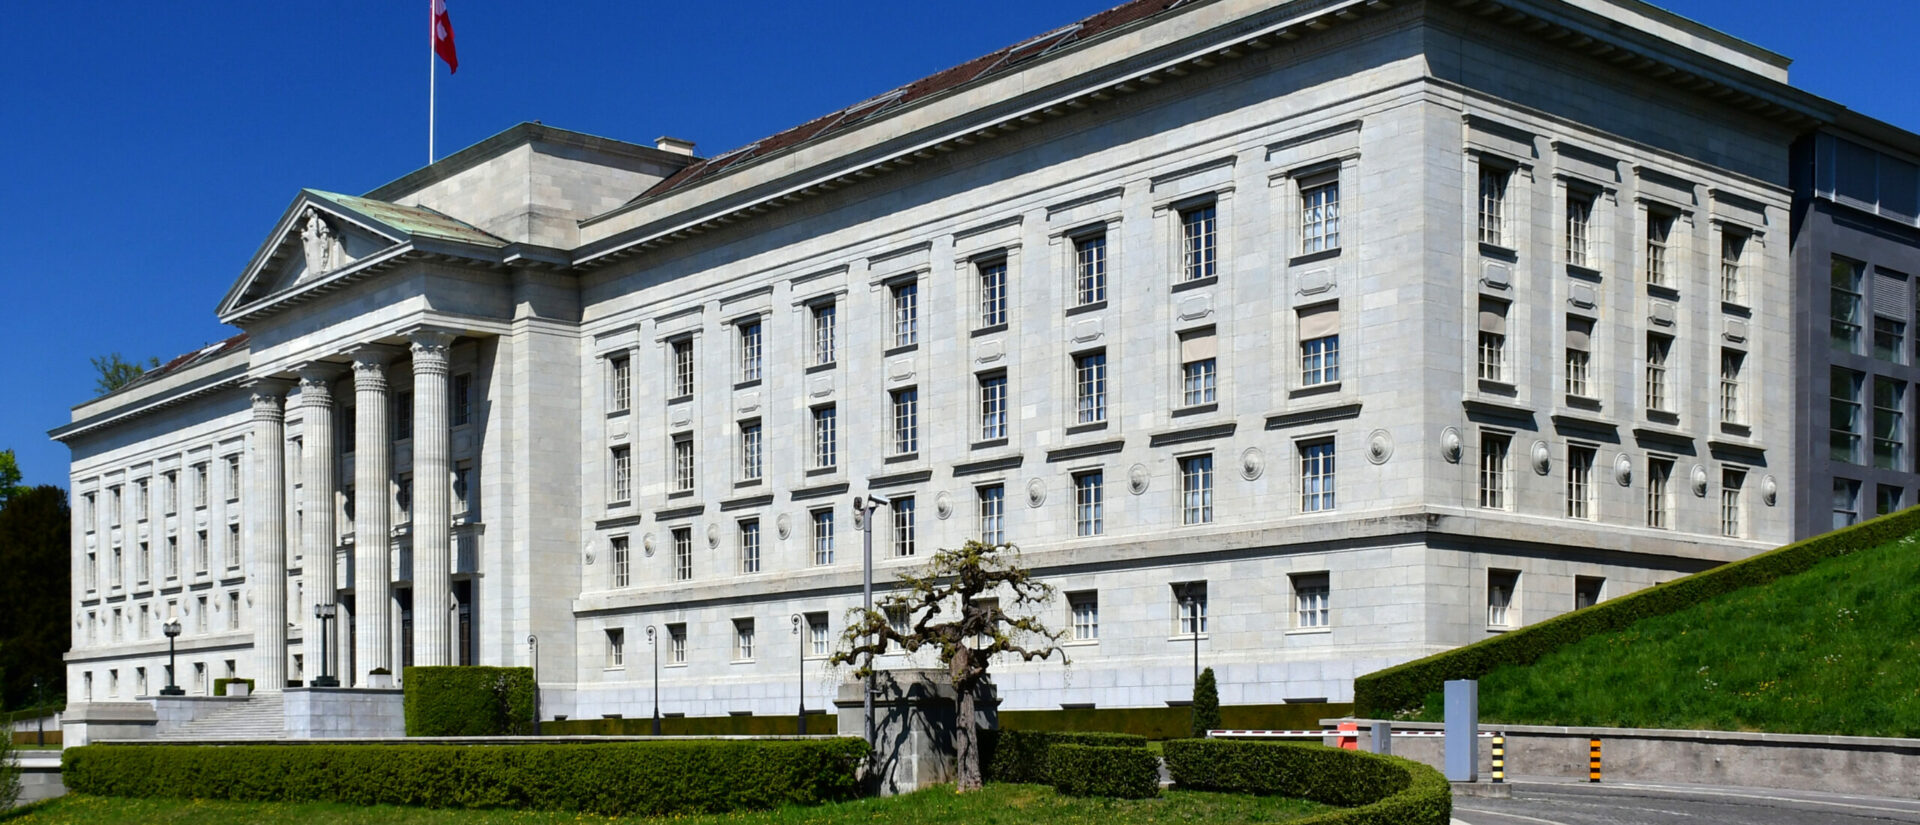 Le Tribunal fédéral, basé à Lausanne, collabore avec la justice vaticane | © Gzzz/Wikimedia/CC BY-SA 4.0